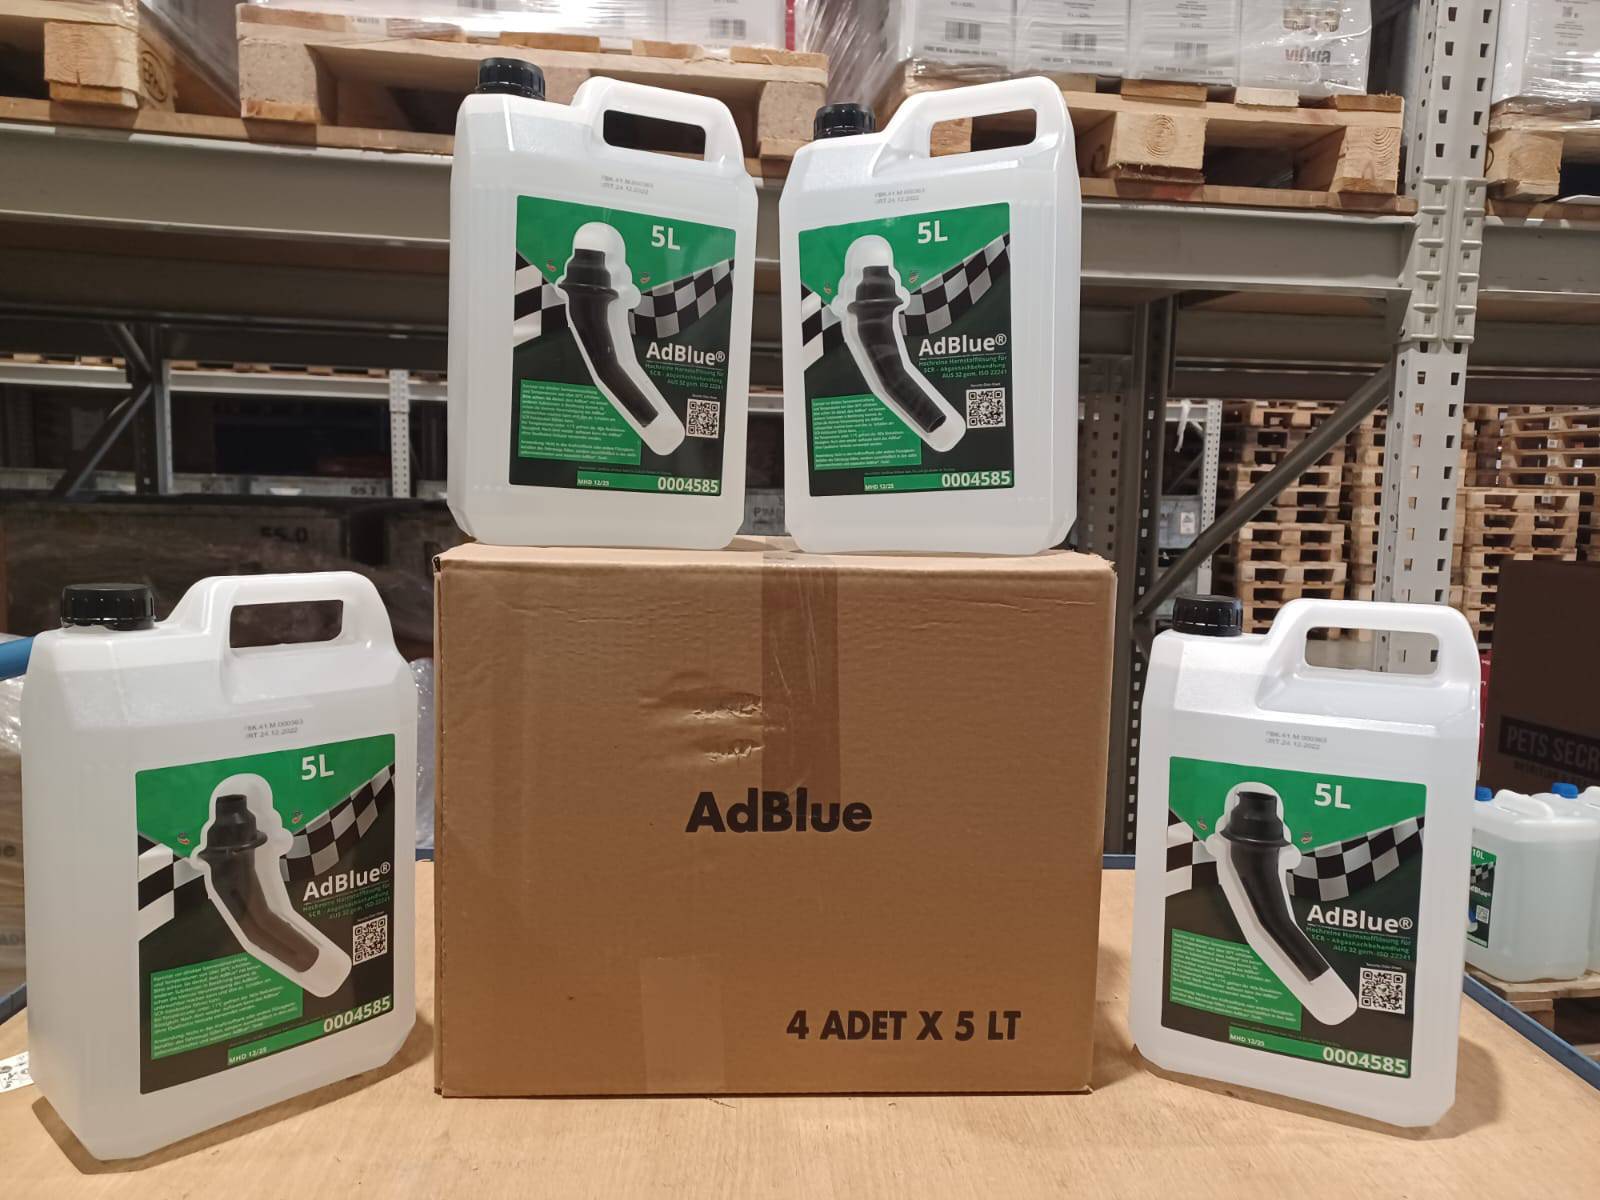 V60-0270 VAICO AdBlue AdBlue, Inhalt: 5l, Q+, Erstausrüsterqualität MADE IN  GERMANY, Inhalt: 5000ml, Kanister AdBlue, ISO 22241 ❱❱❱ Preis und  Erfahrungen